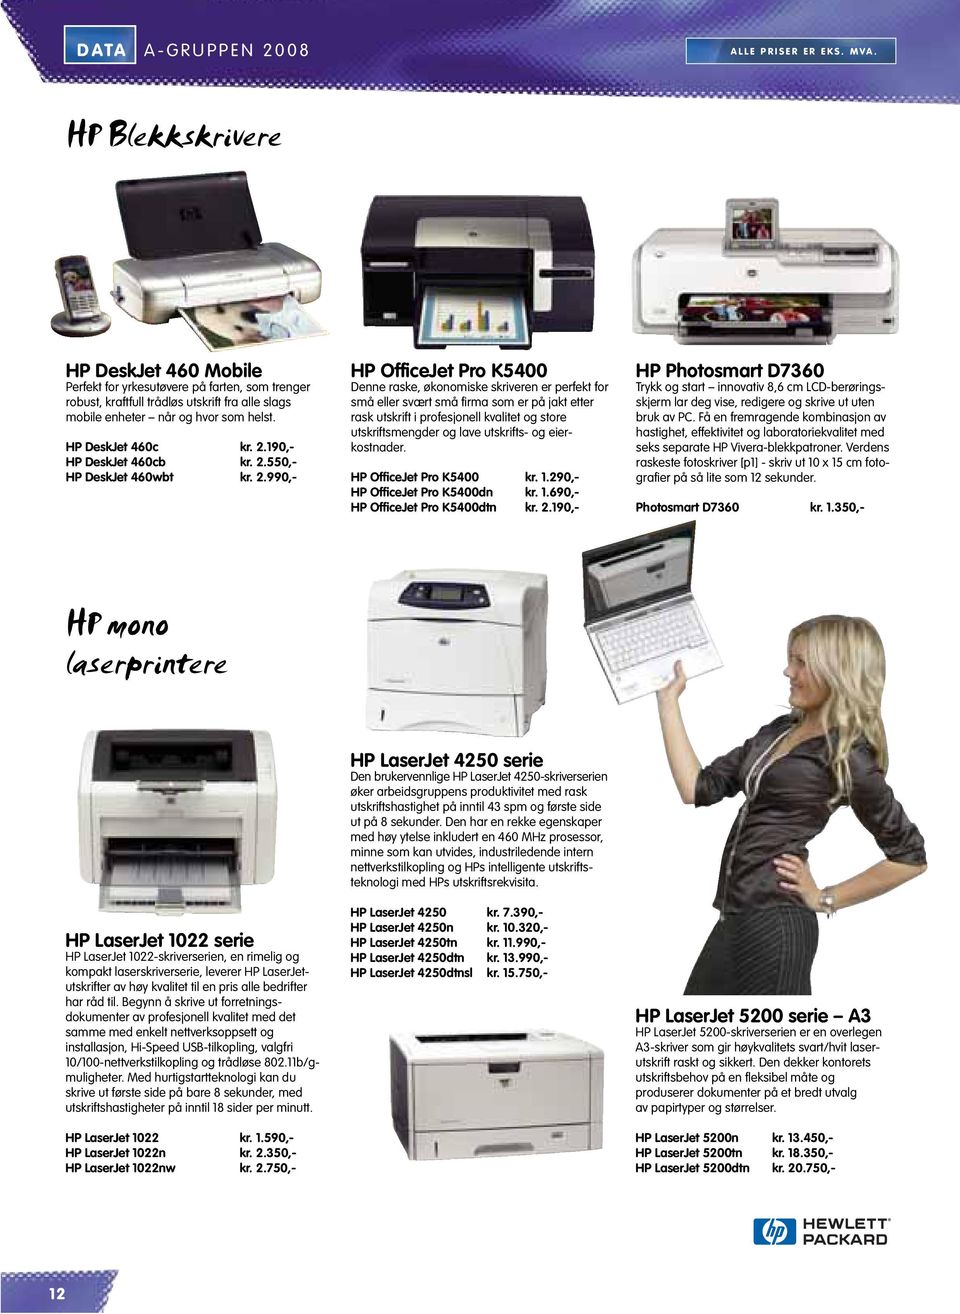 190,- HP DeskJet 460cb kr. 2.